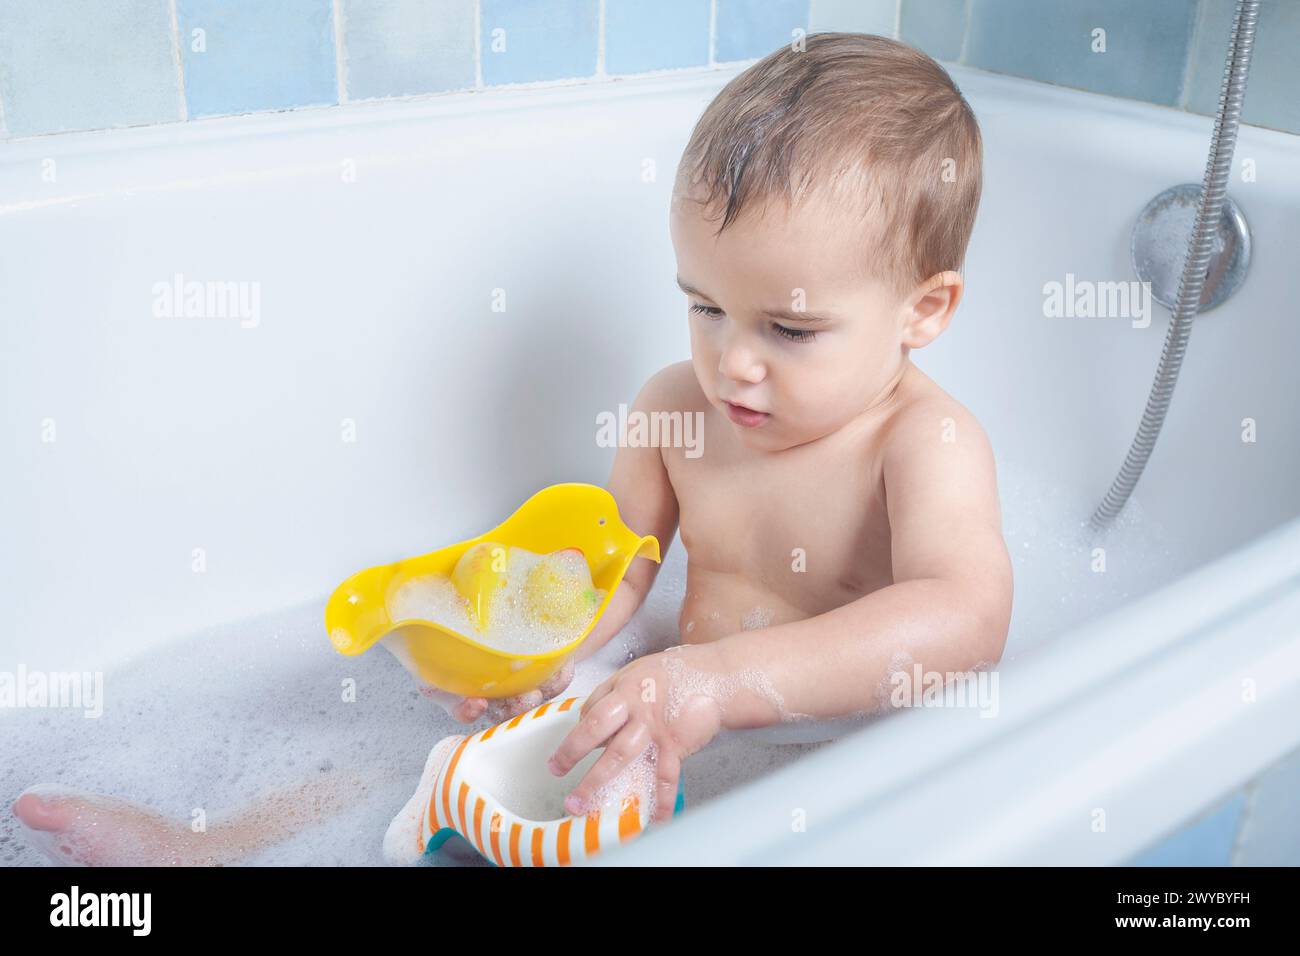 Das Kind kichert, während es mit dem Badewasser spielt, sodass es in der Badewanne spritzt und lächelt. Stockfoto